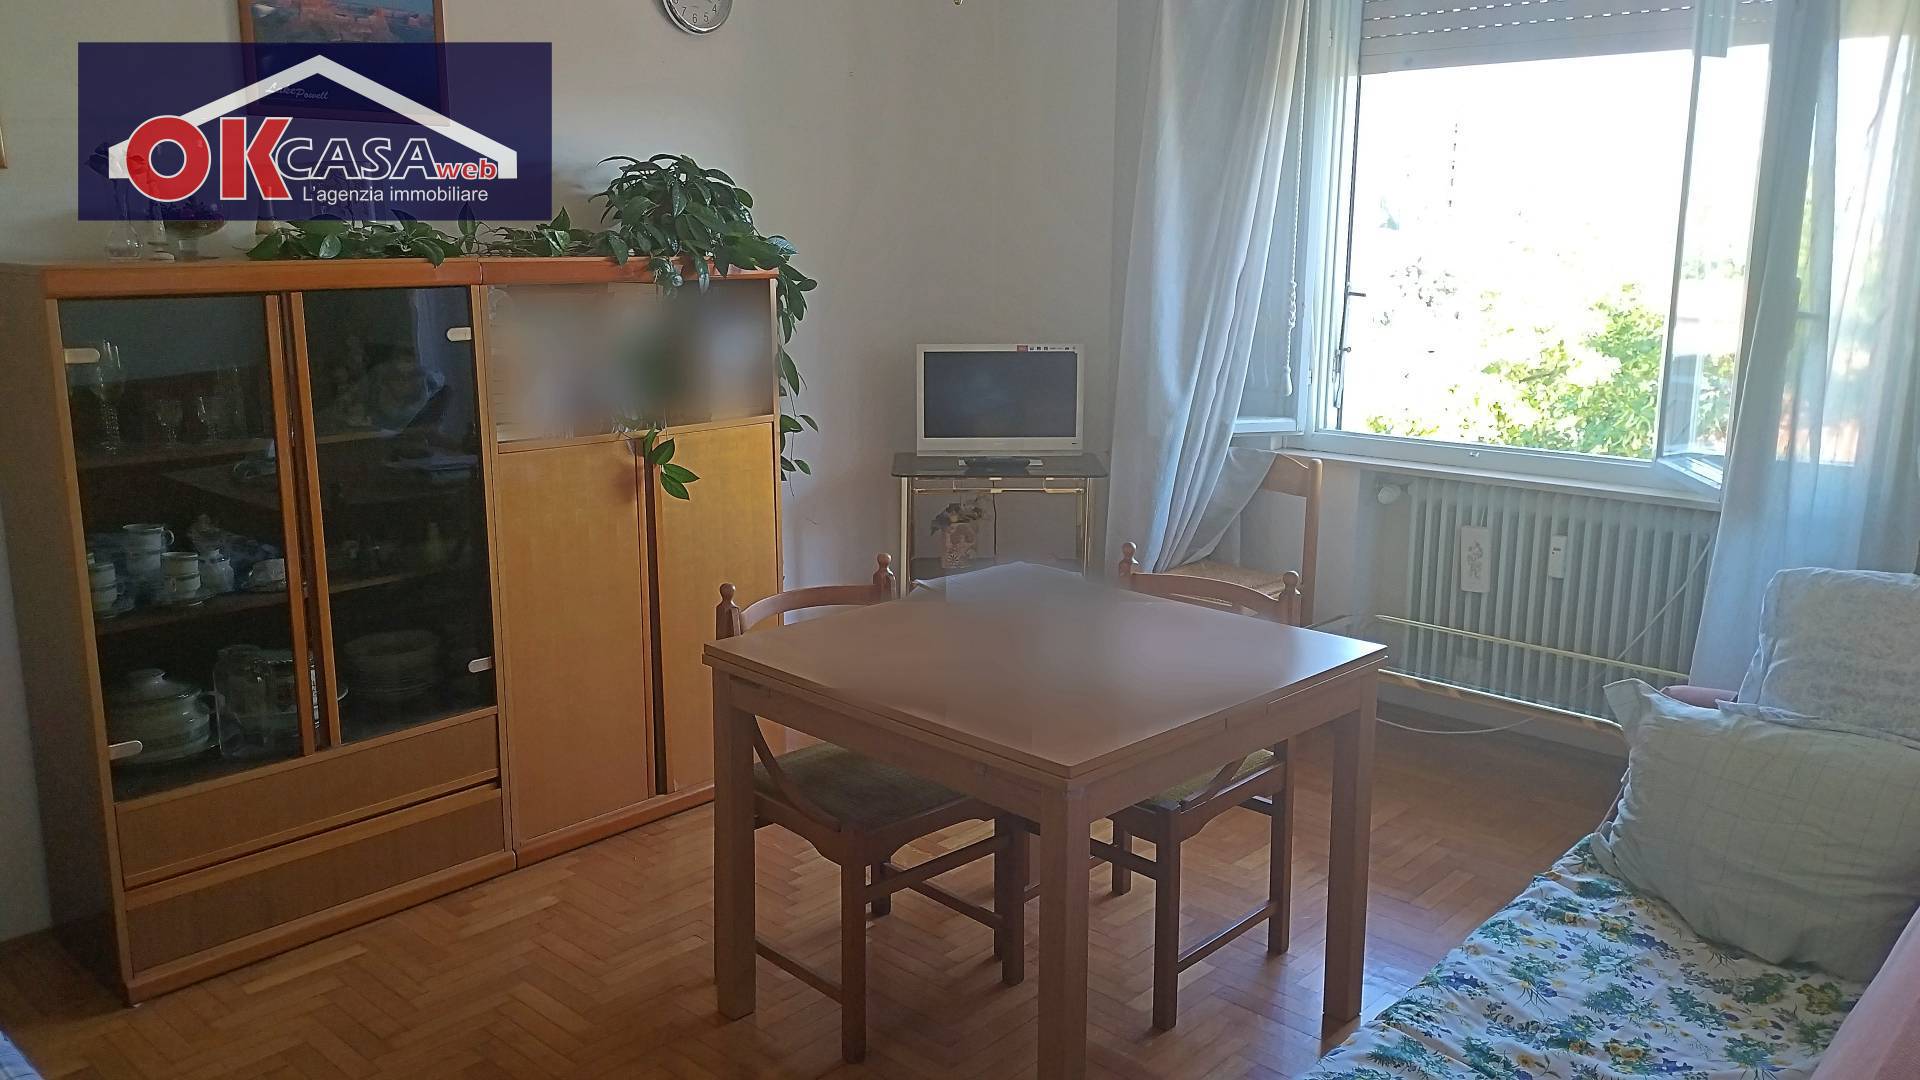 Appartamento in vendita a Gorizia, 3 locali, prezzo € 60.000 | PortaleAgenzieImmobiliari.it